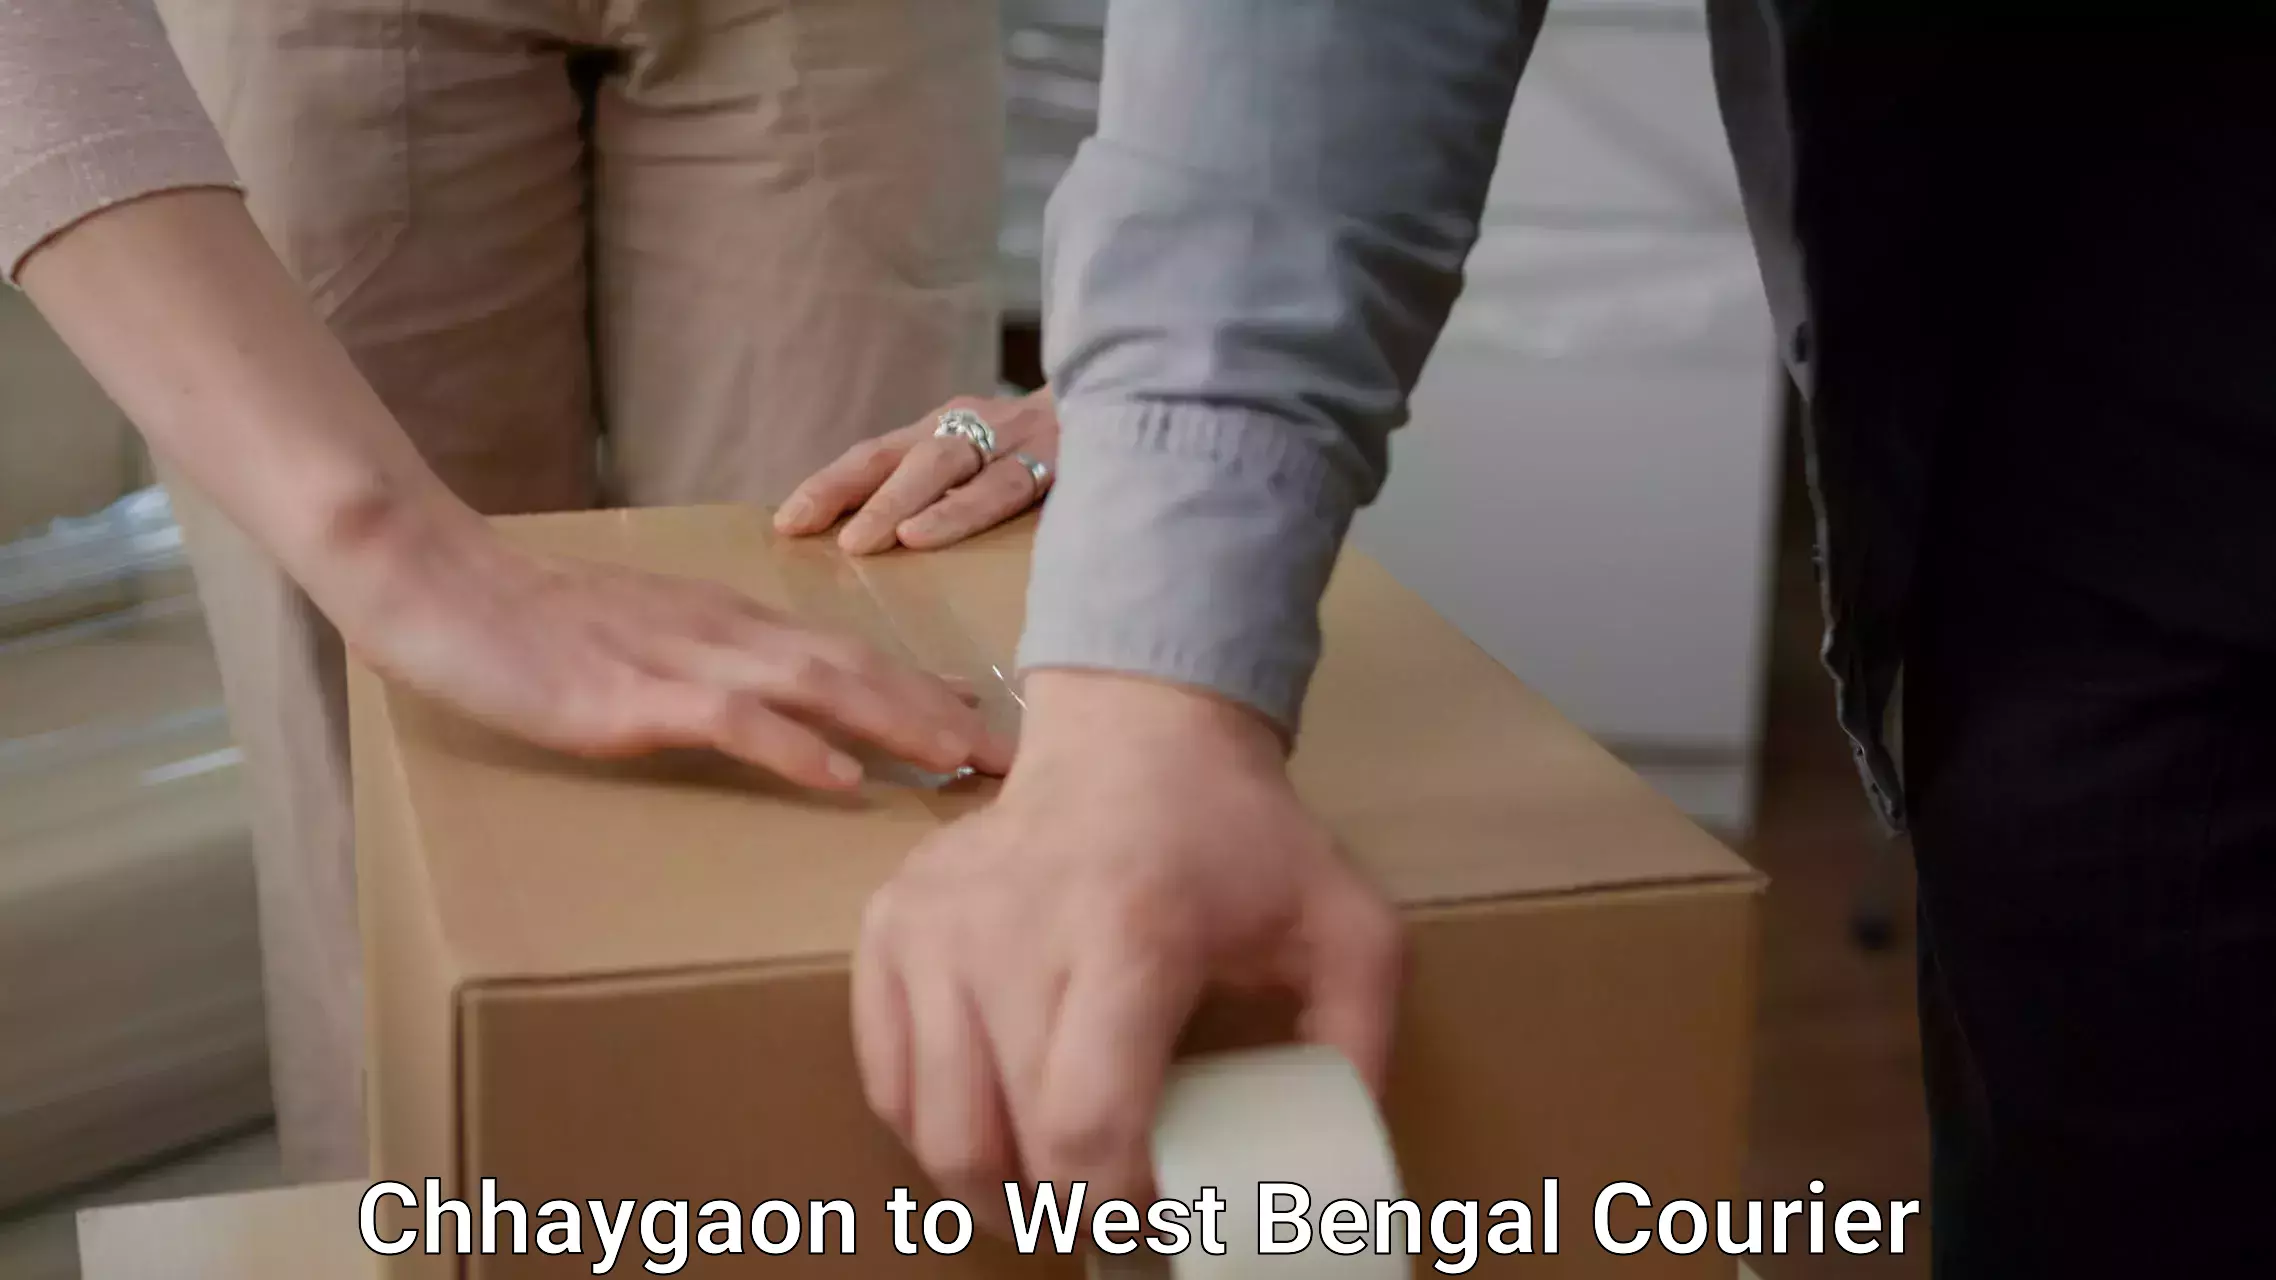 Furniture transport and storage Chhaygaon to Mekhliganj